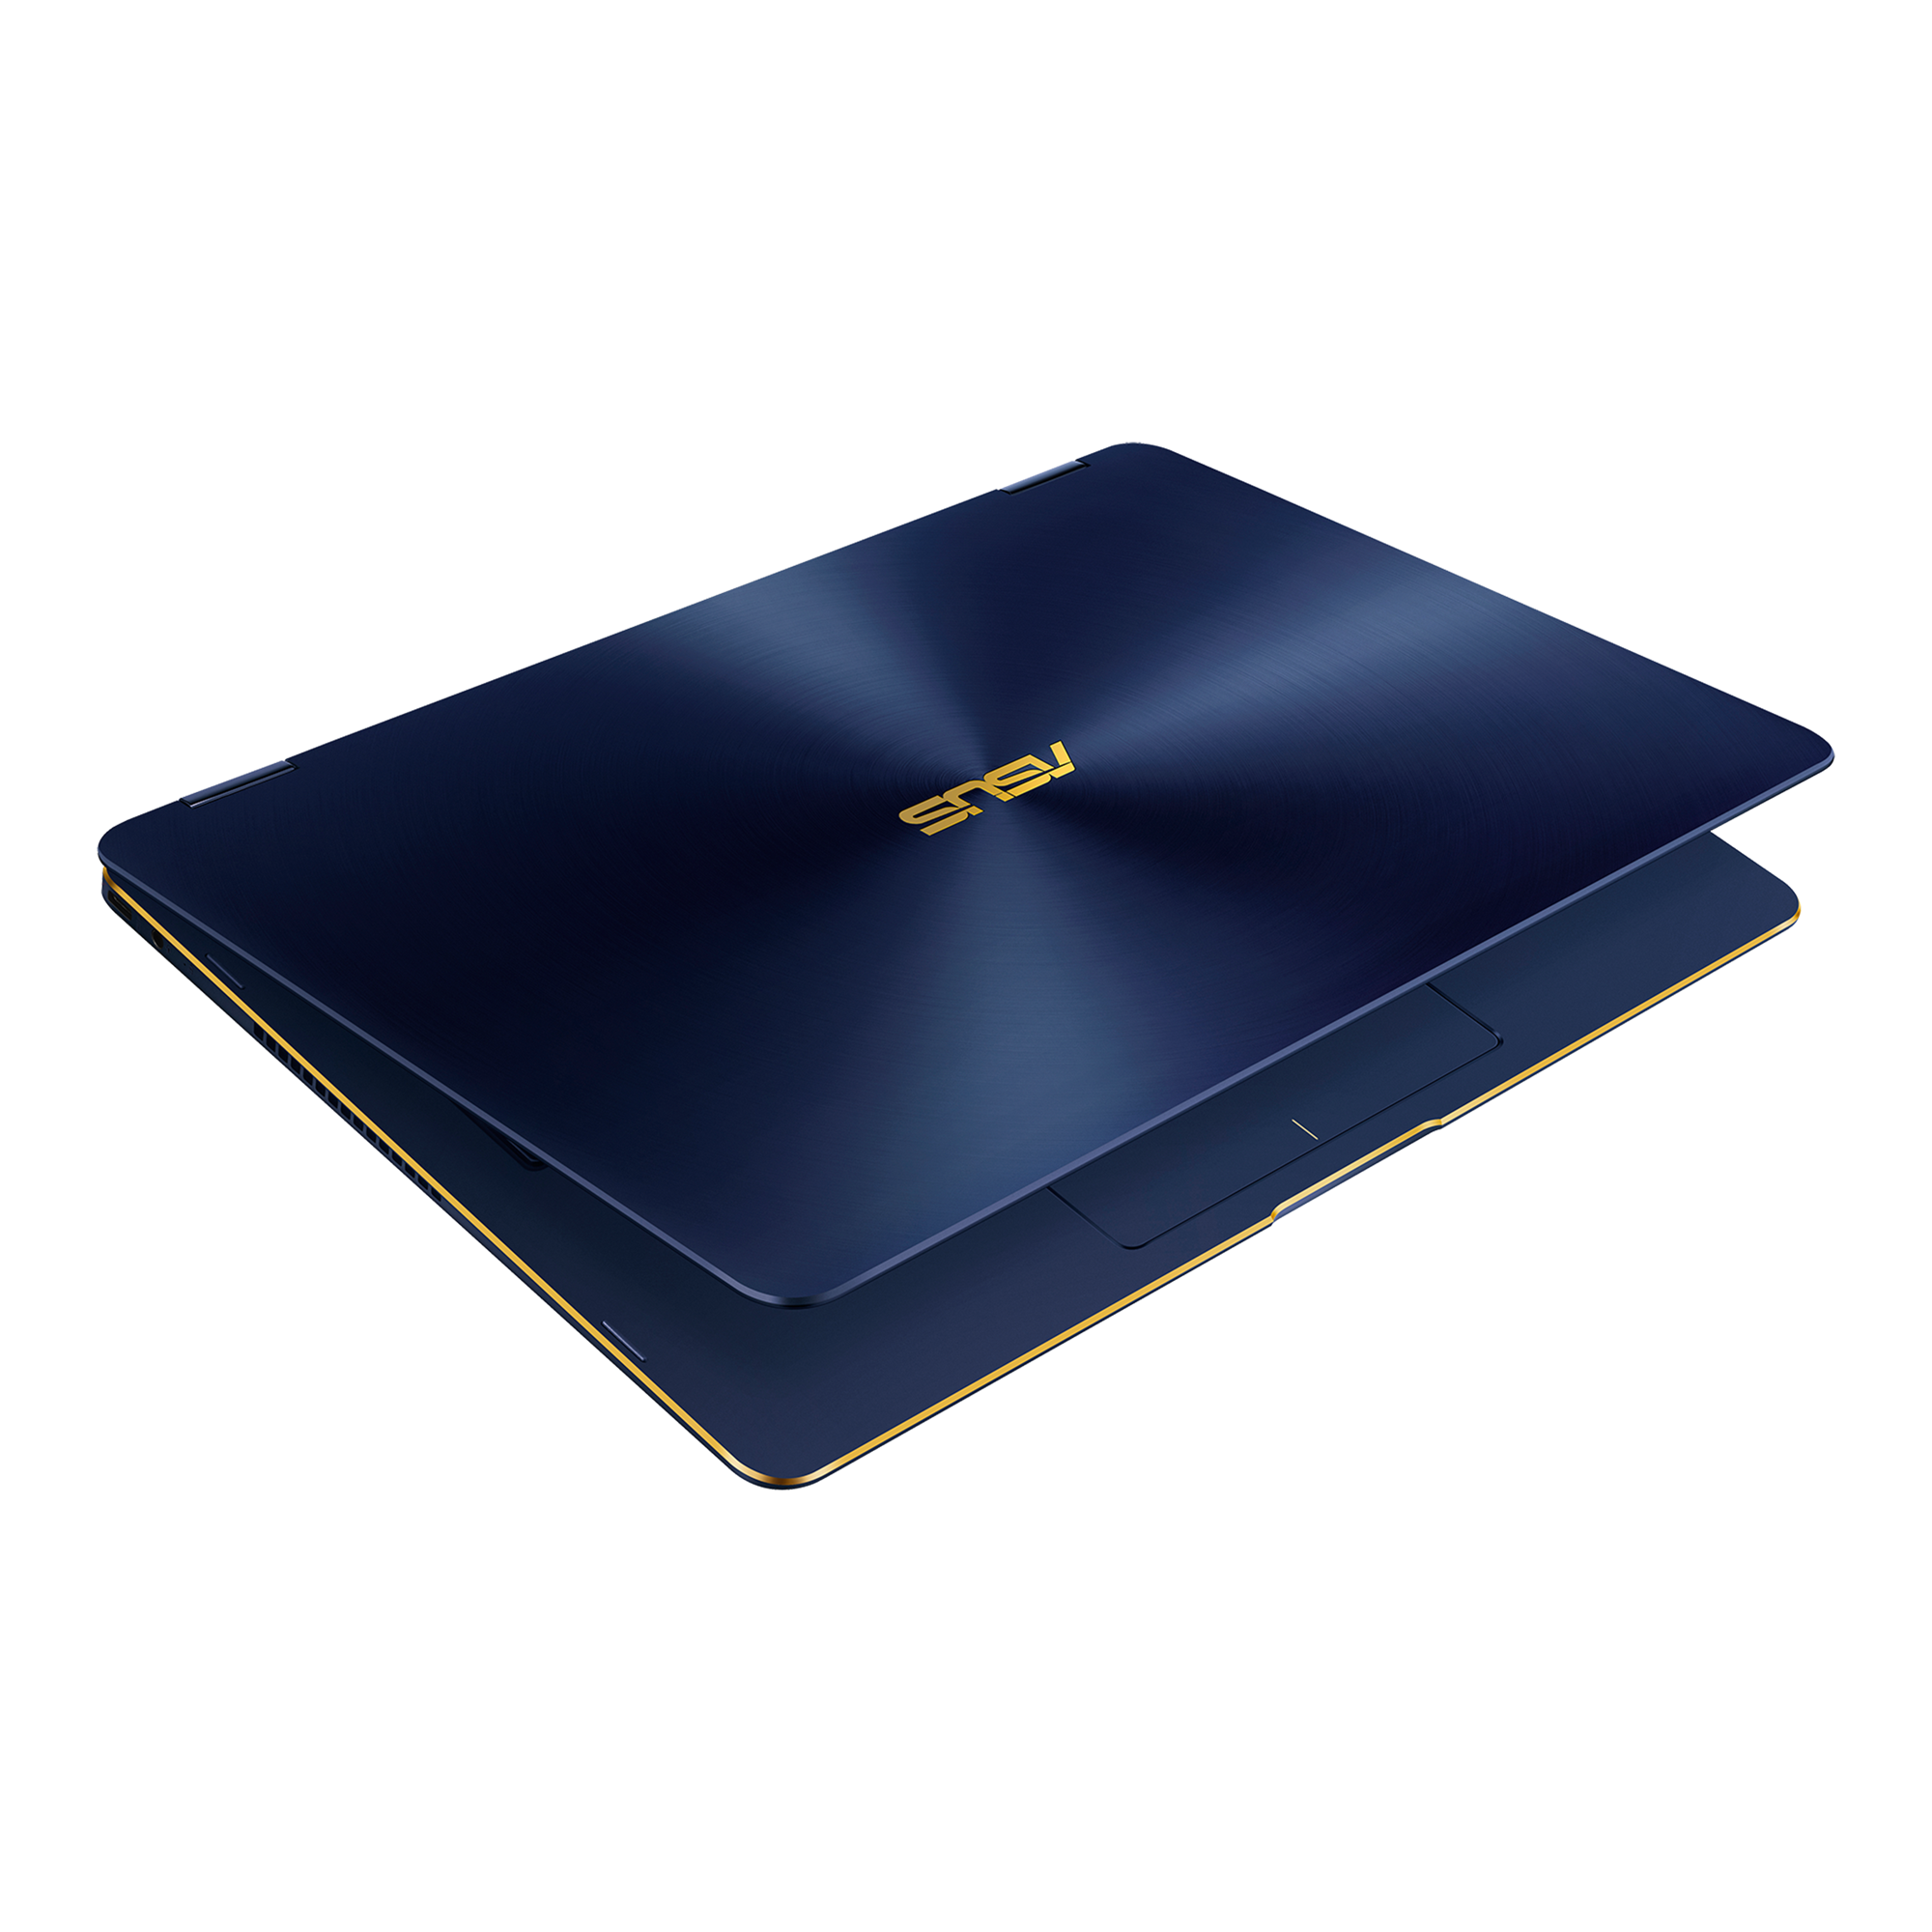 ASUS ZenBook Flip S UX370UA(UX370UA-8550